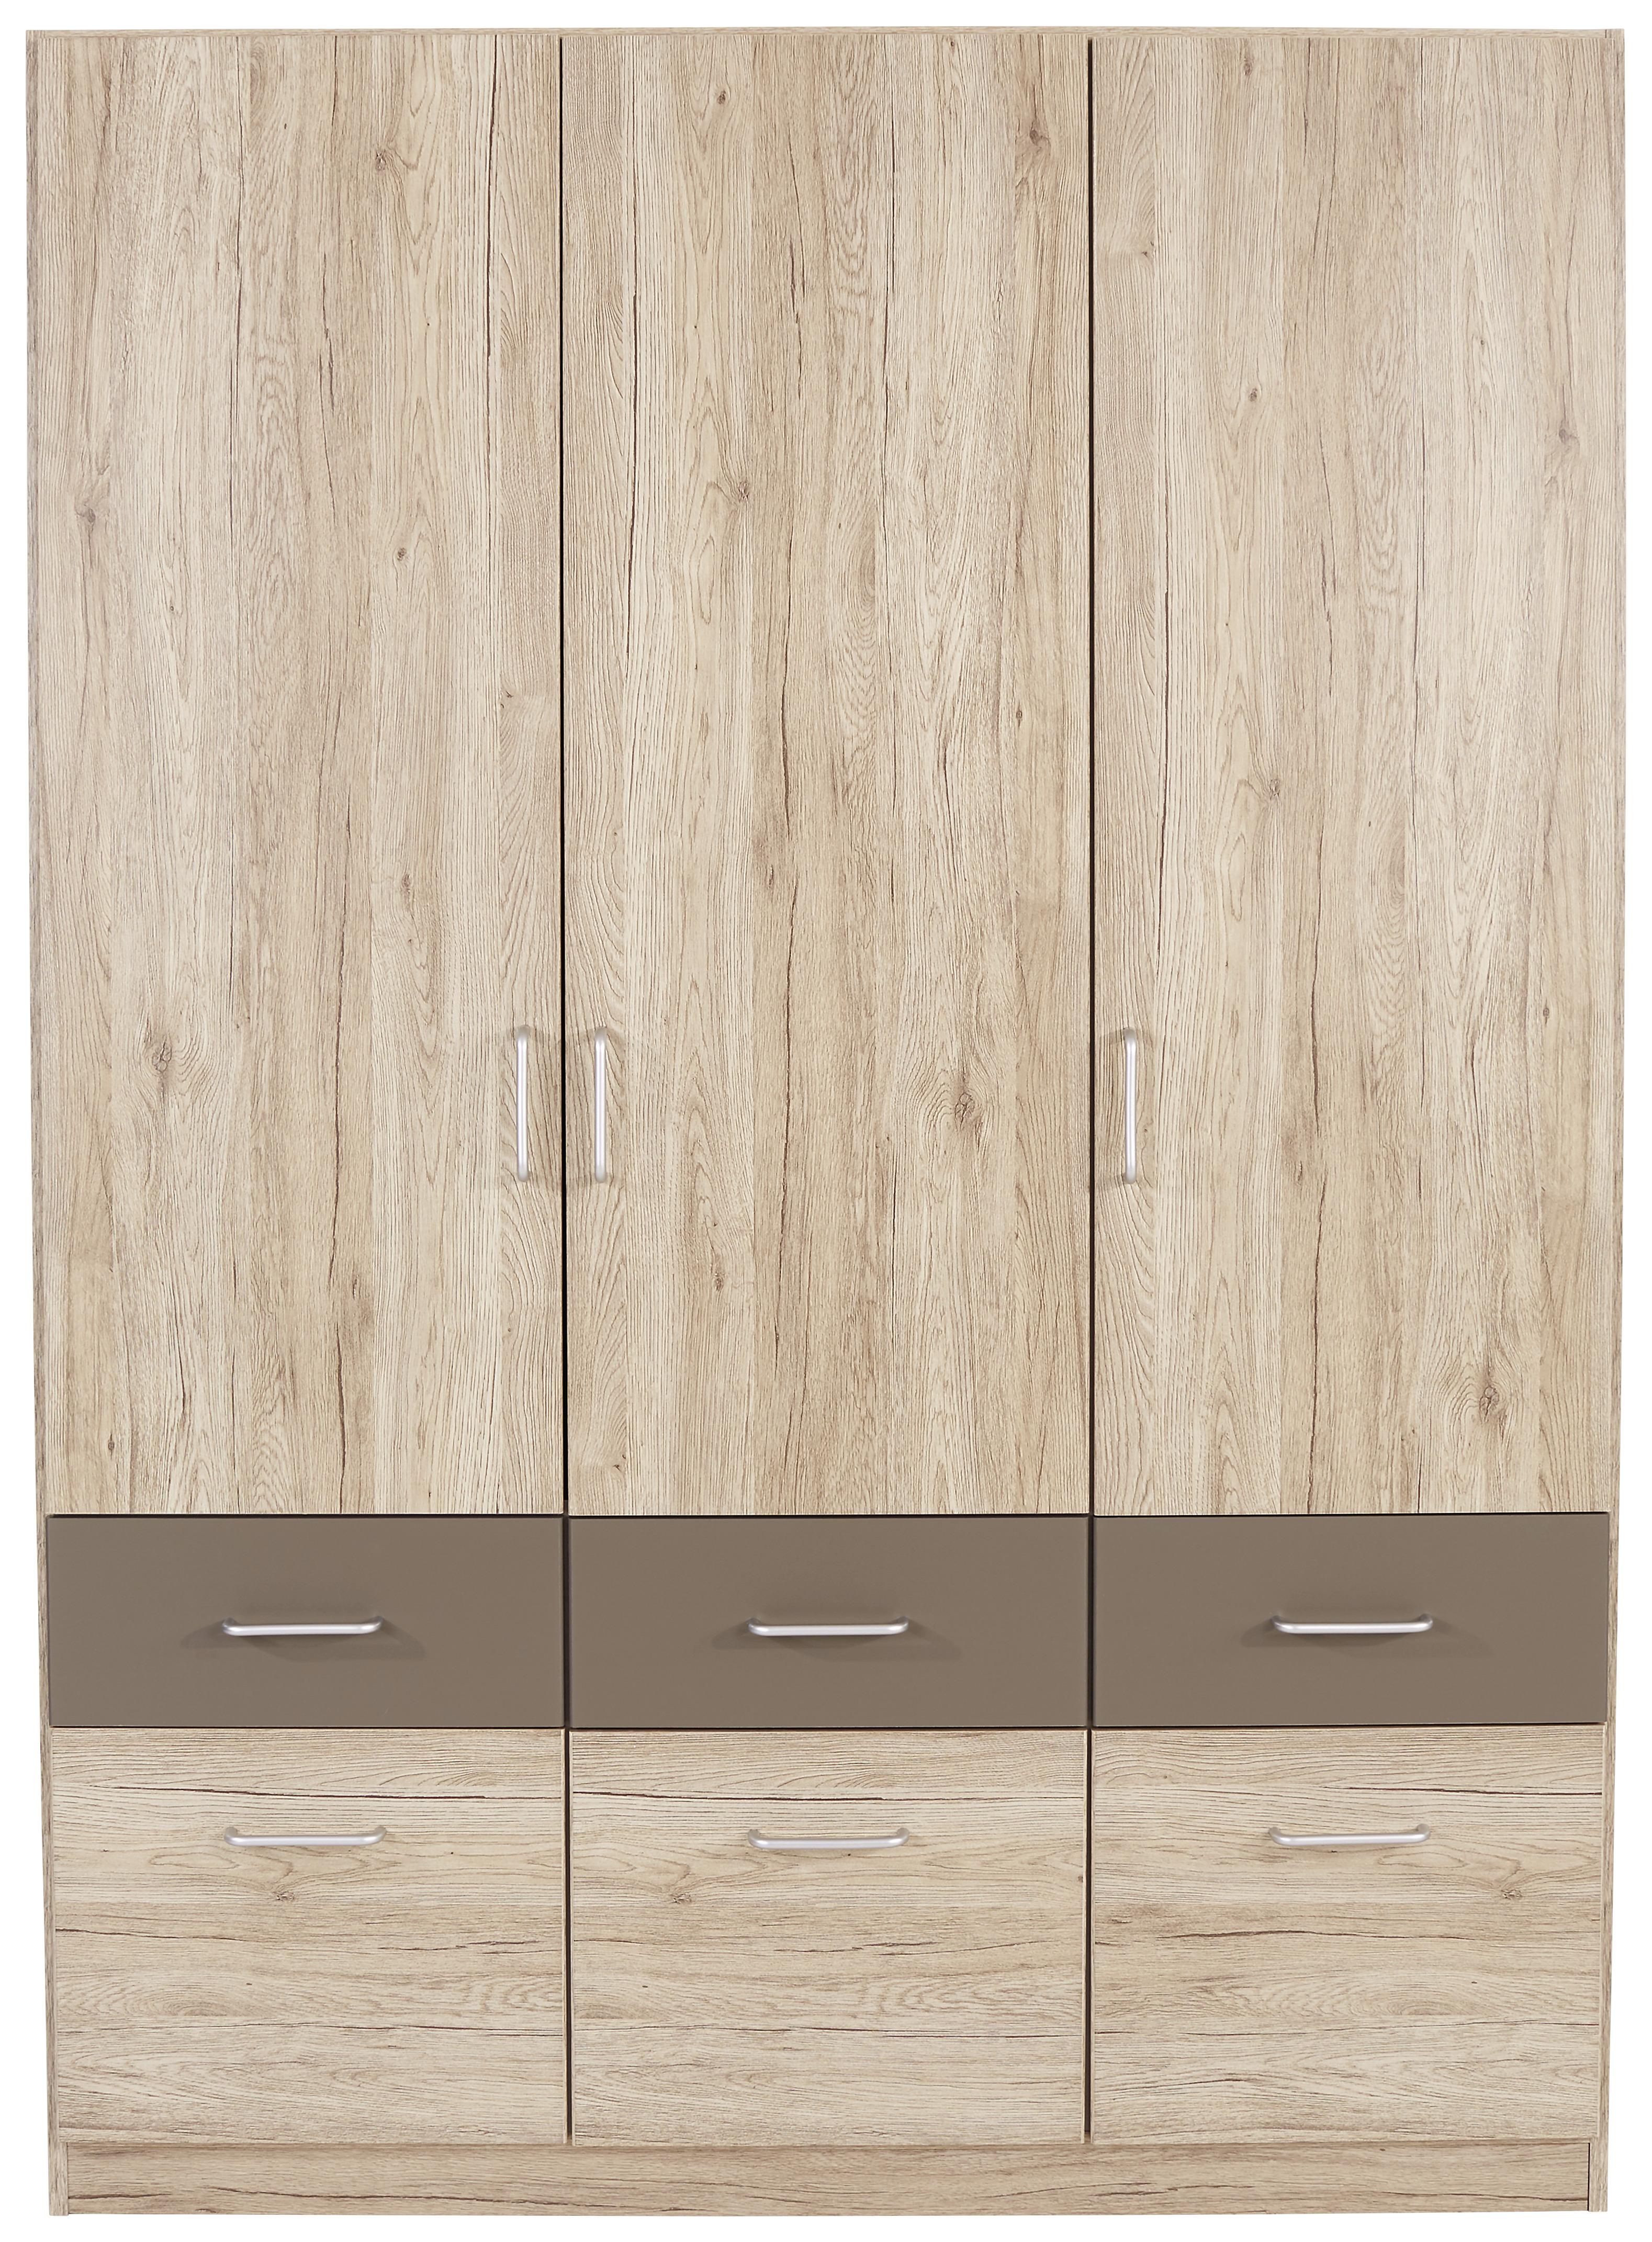 Dulap de haine Aalen-extra - culoare lemn stejar/gri, Konventionell, material pe bază de lemn (136/197/54cm)